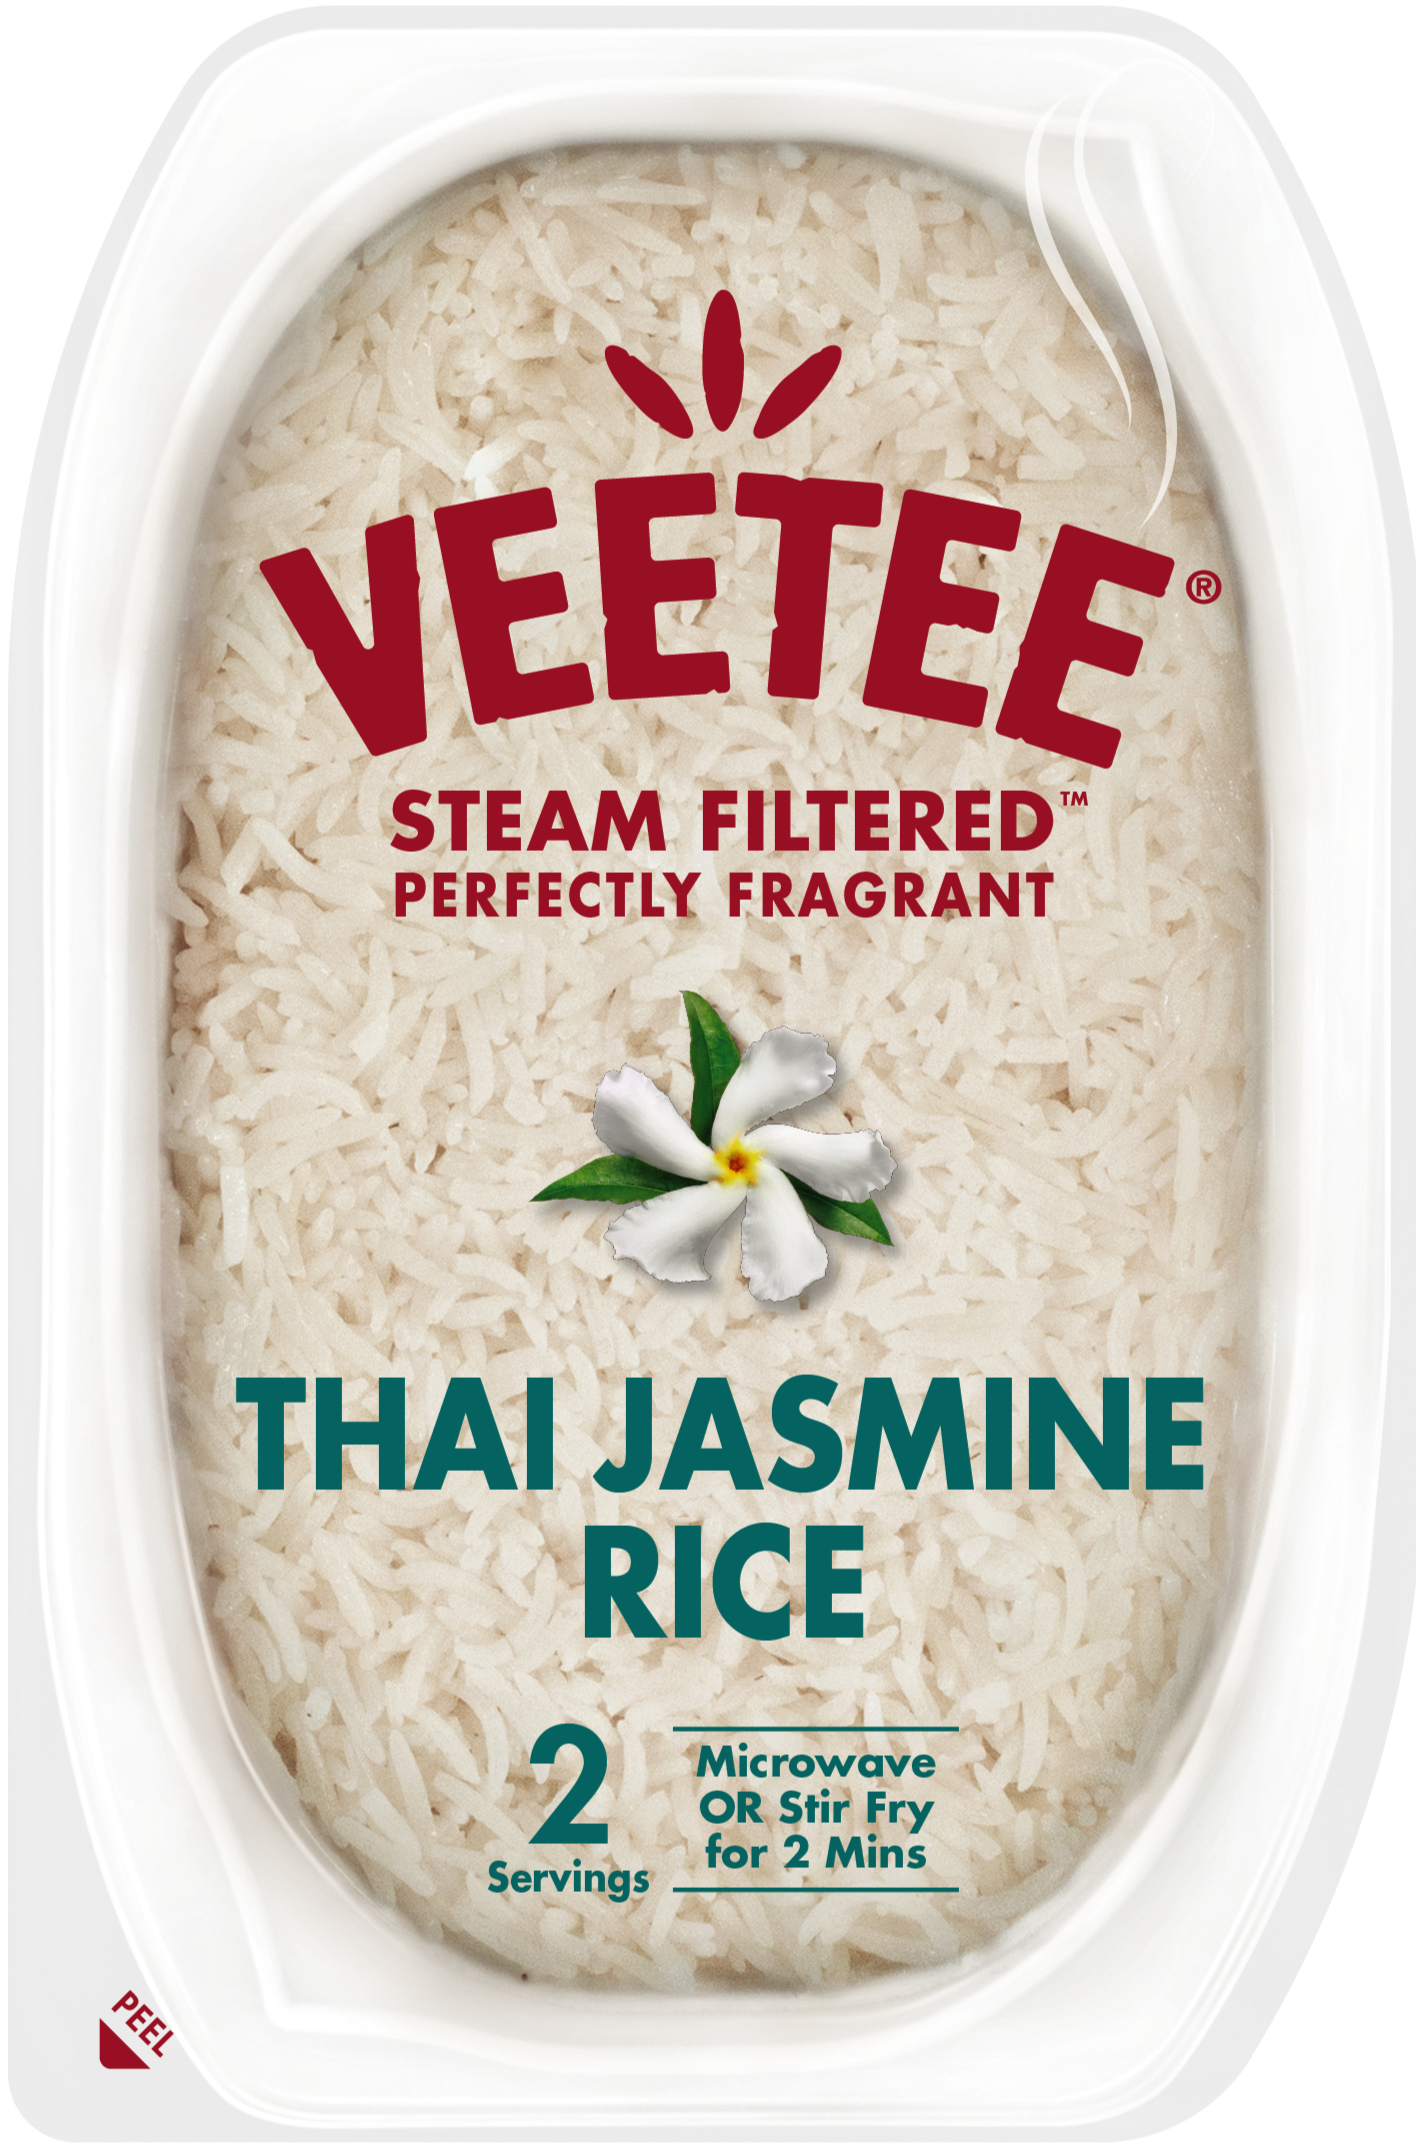 Veetee_Steam_Filtered_Thai_Jasmine_Single.png